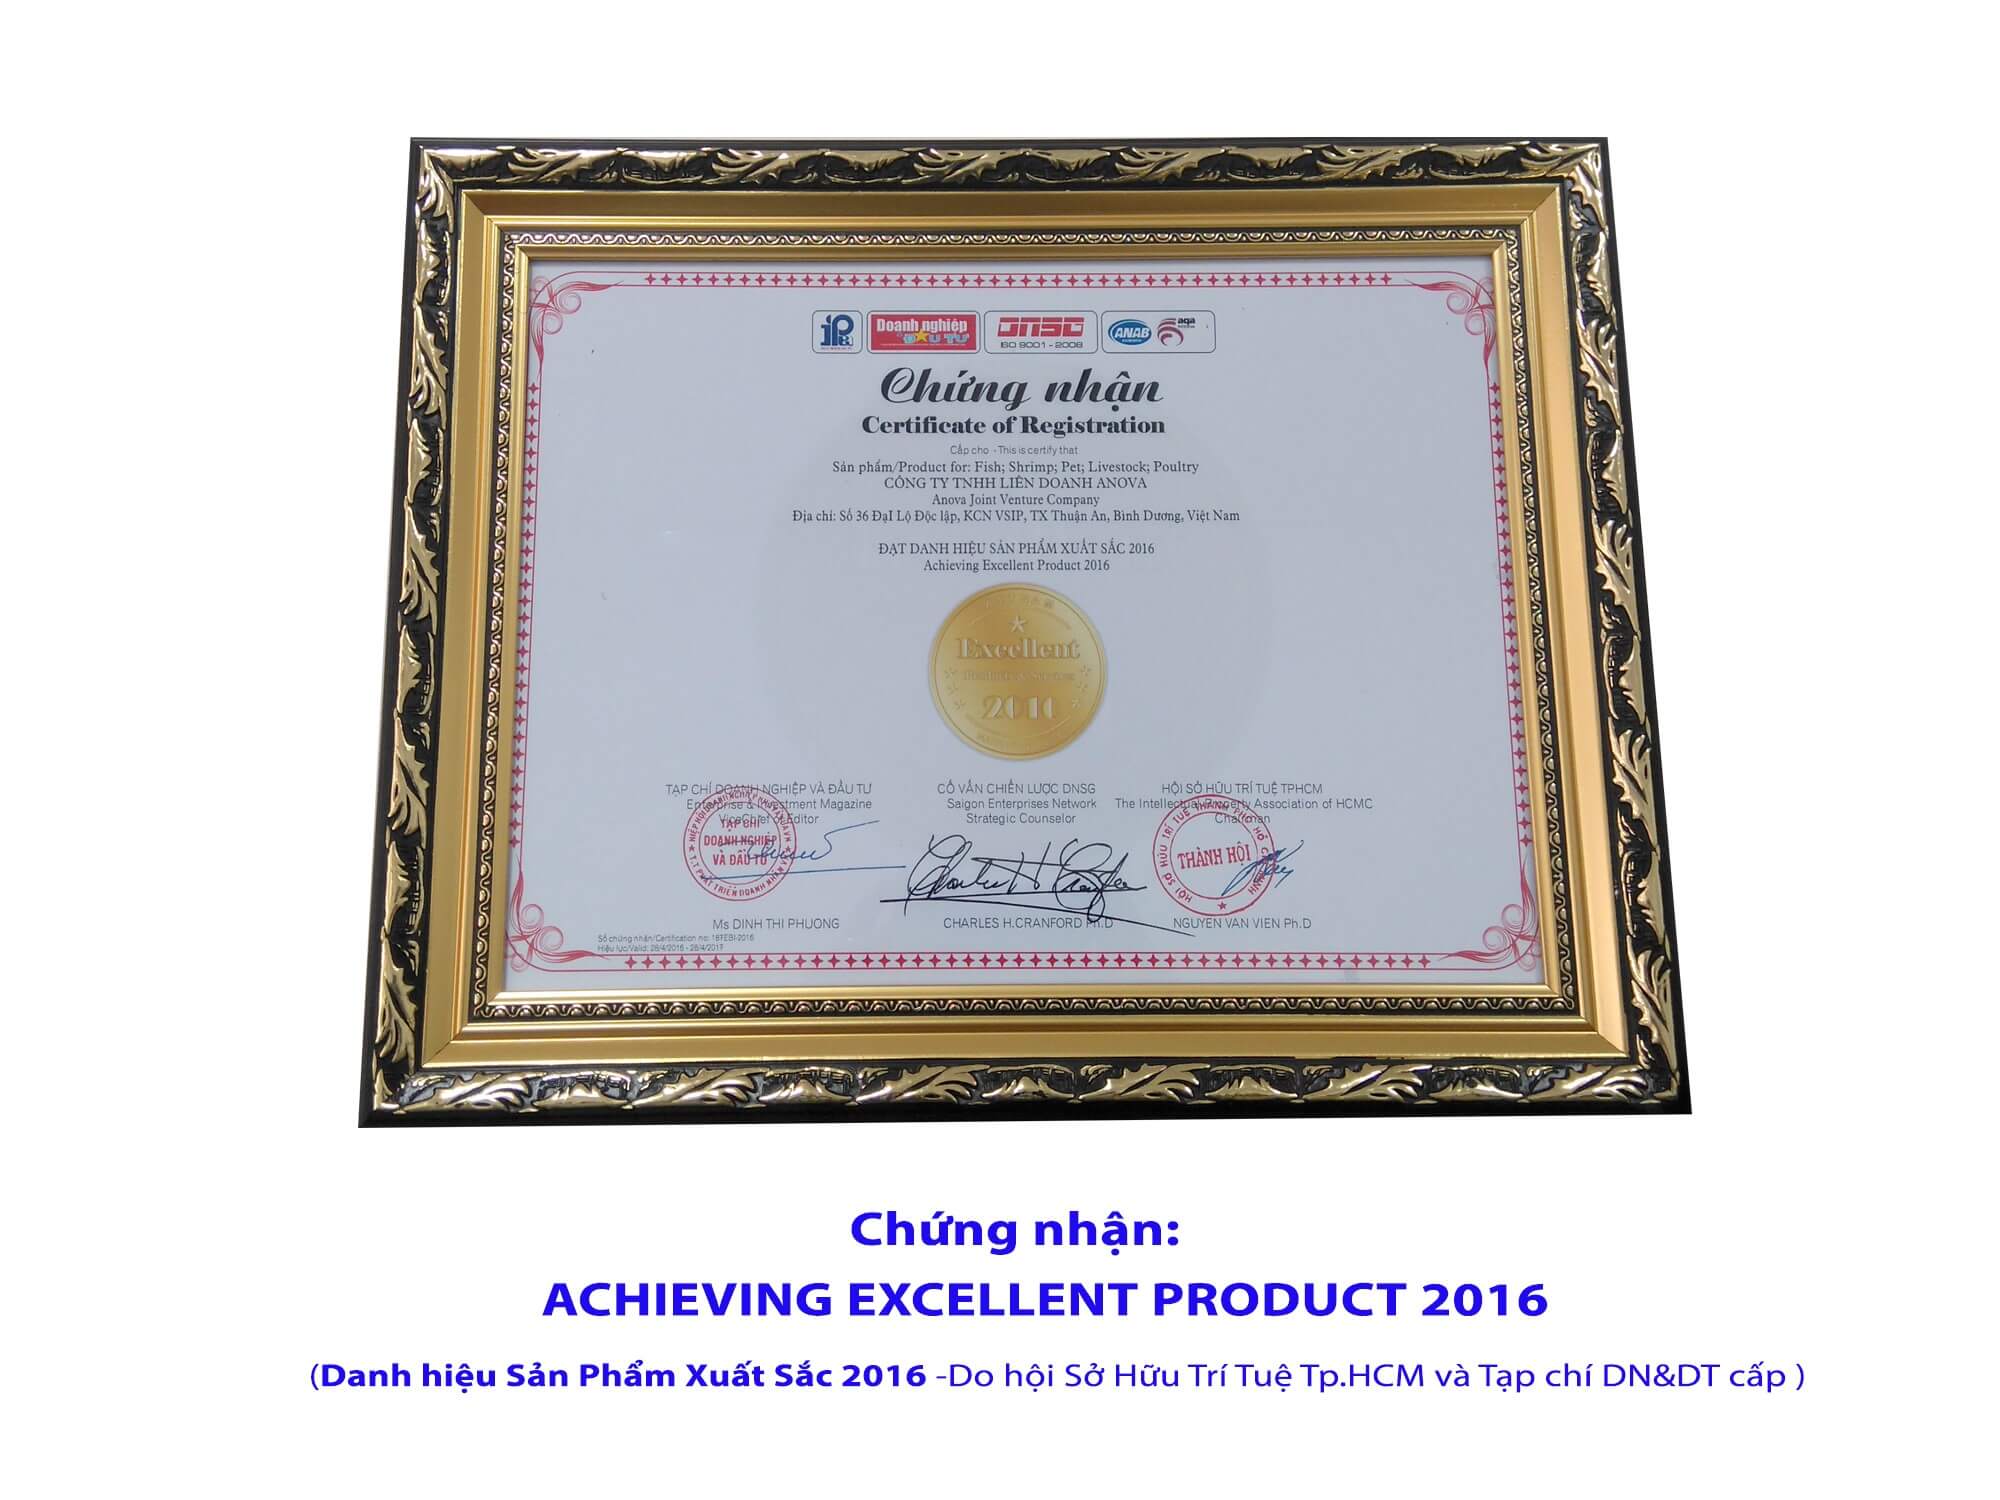 Chứng nhận: Achieving Excellent Product 2016 (Danh hiệu Sản Phẩm Xuất Sắc 2016 - Do hội Sở Hữu Trí Tuệ TP.HCM và Tạp chí DN&DT cấp)